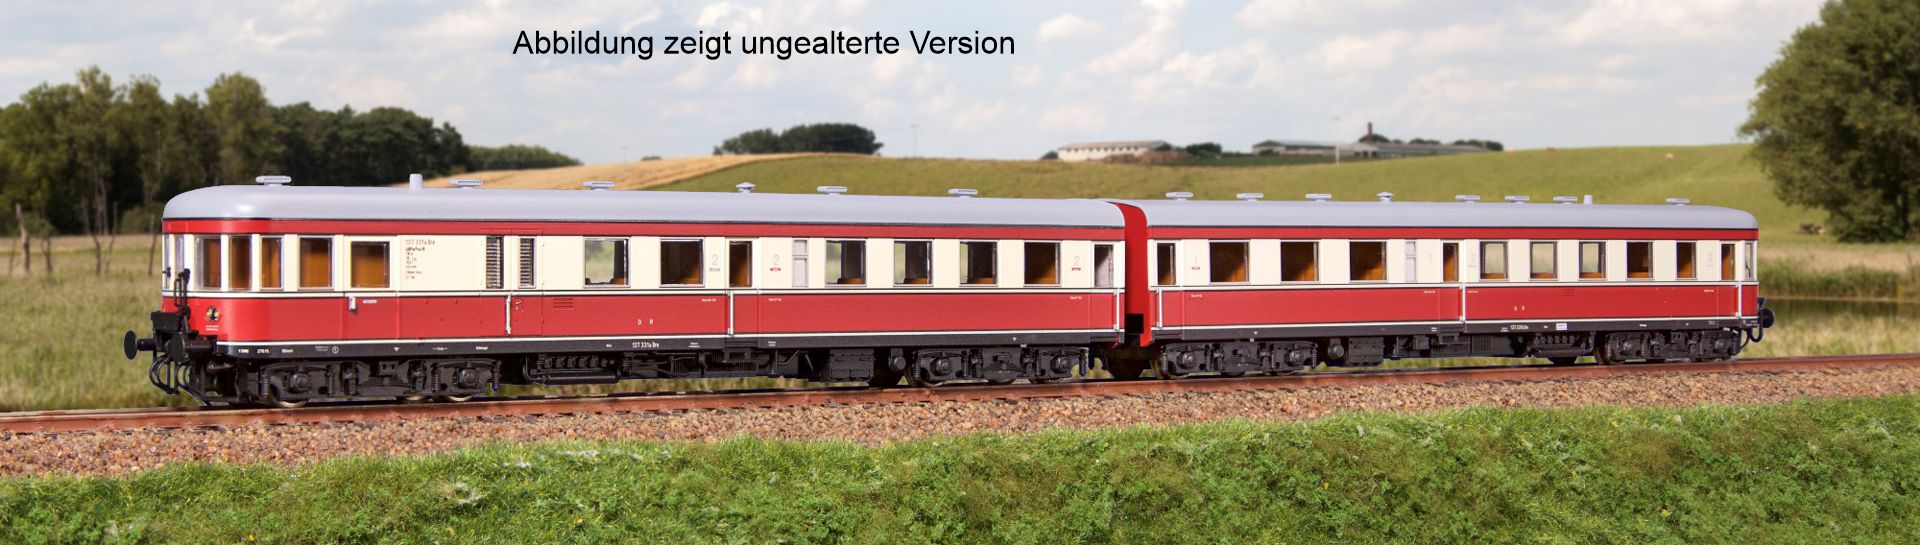 Kres 51016210 - Triebzug VT 137 Bauart 'Stettin', DR, Ep.III, gealtert